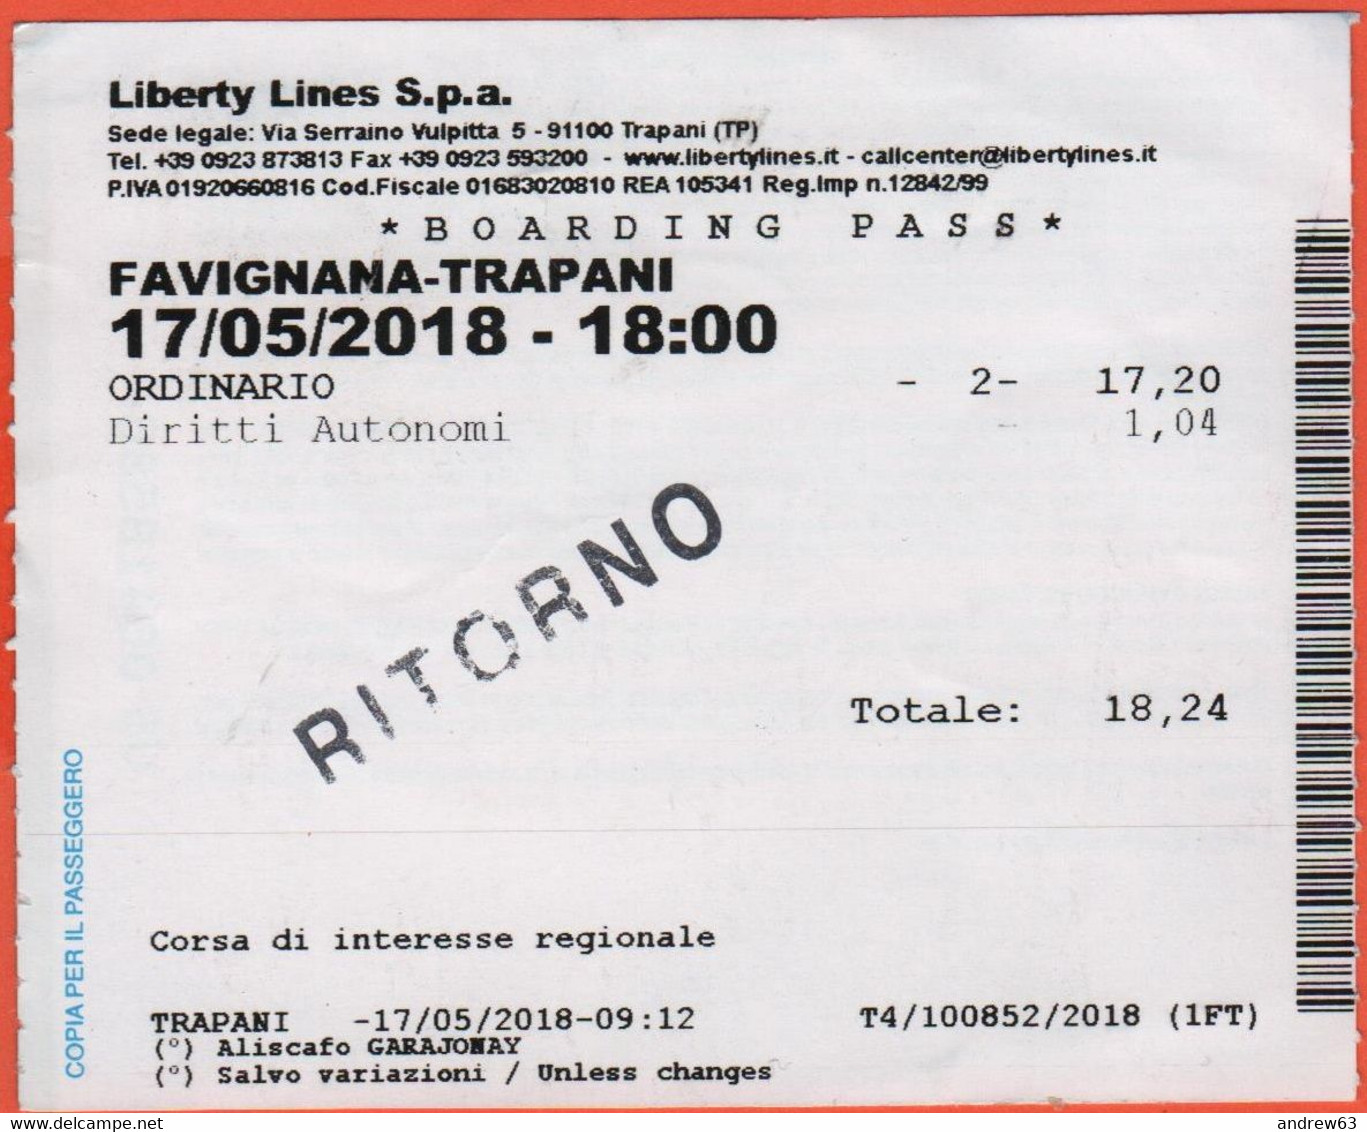 LIBERTY LINES SPA - FAVIGNANA-TRAPANI - Aliscafo Garajonay - Boarding Pass - Biglietto Per Corsa Semplice - Usato - Europe